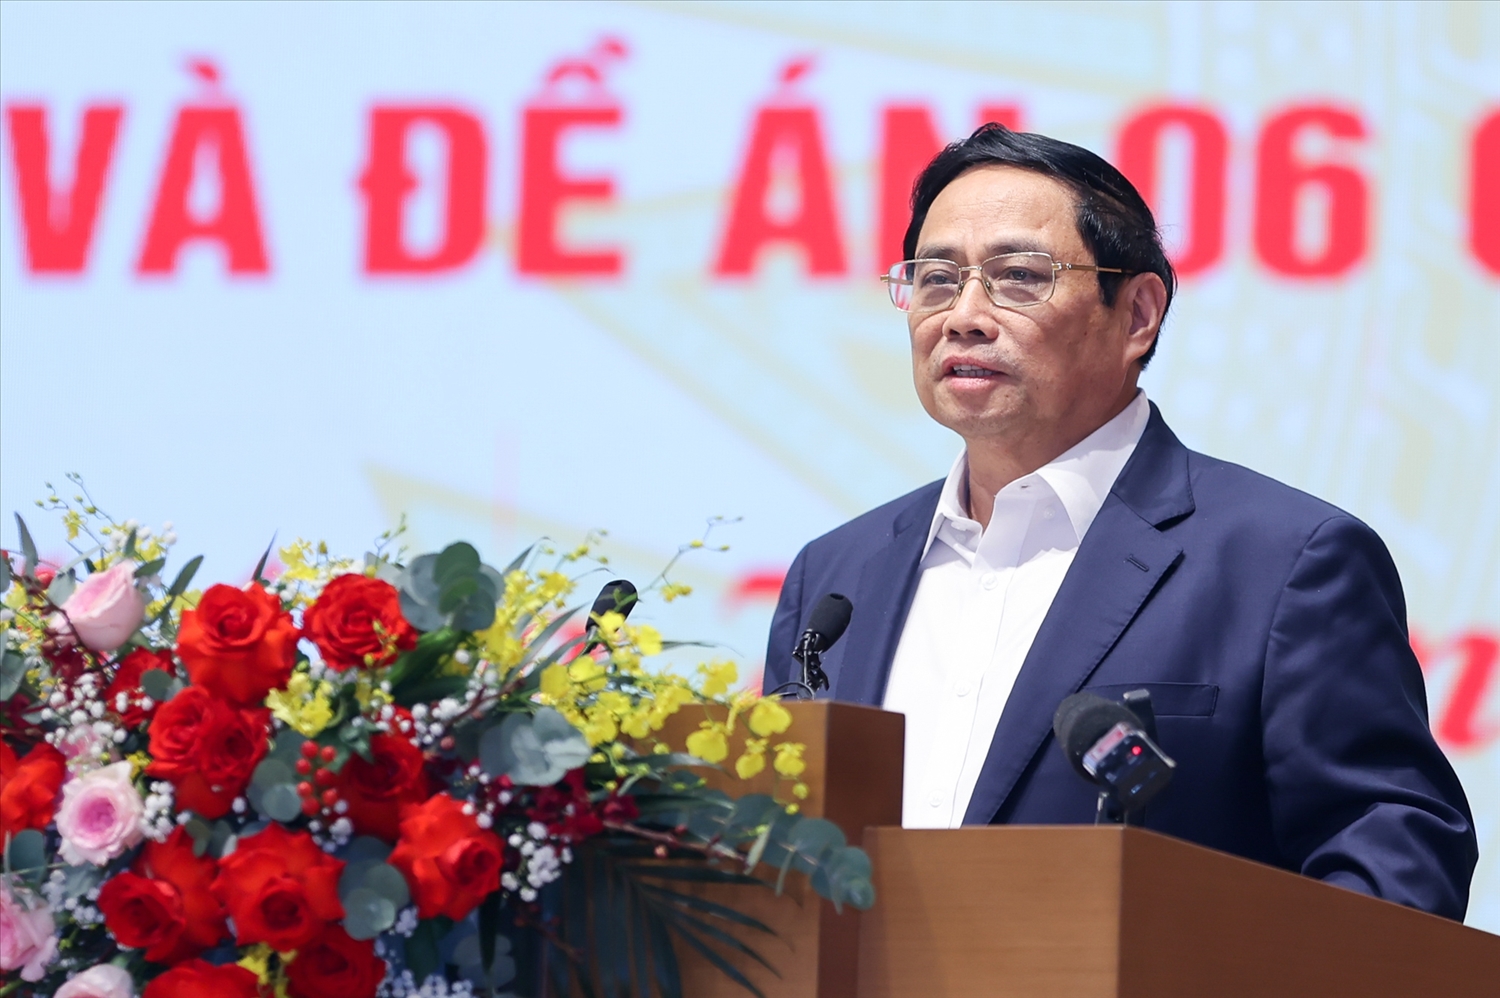 Thủ tướng Phạm Minh Chính phát biểu kết luận Hội nghị - Ảnh: VGP/Nhật Bắc